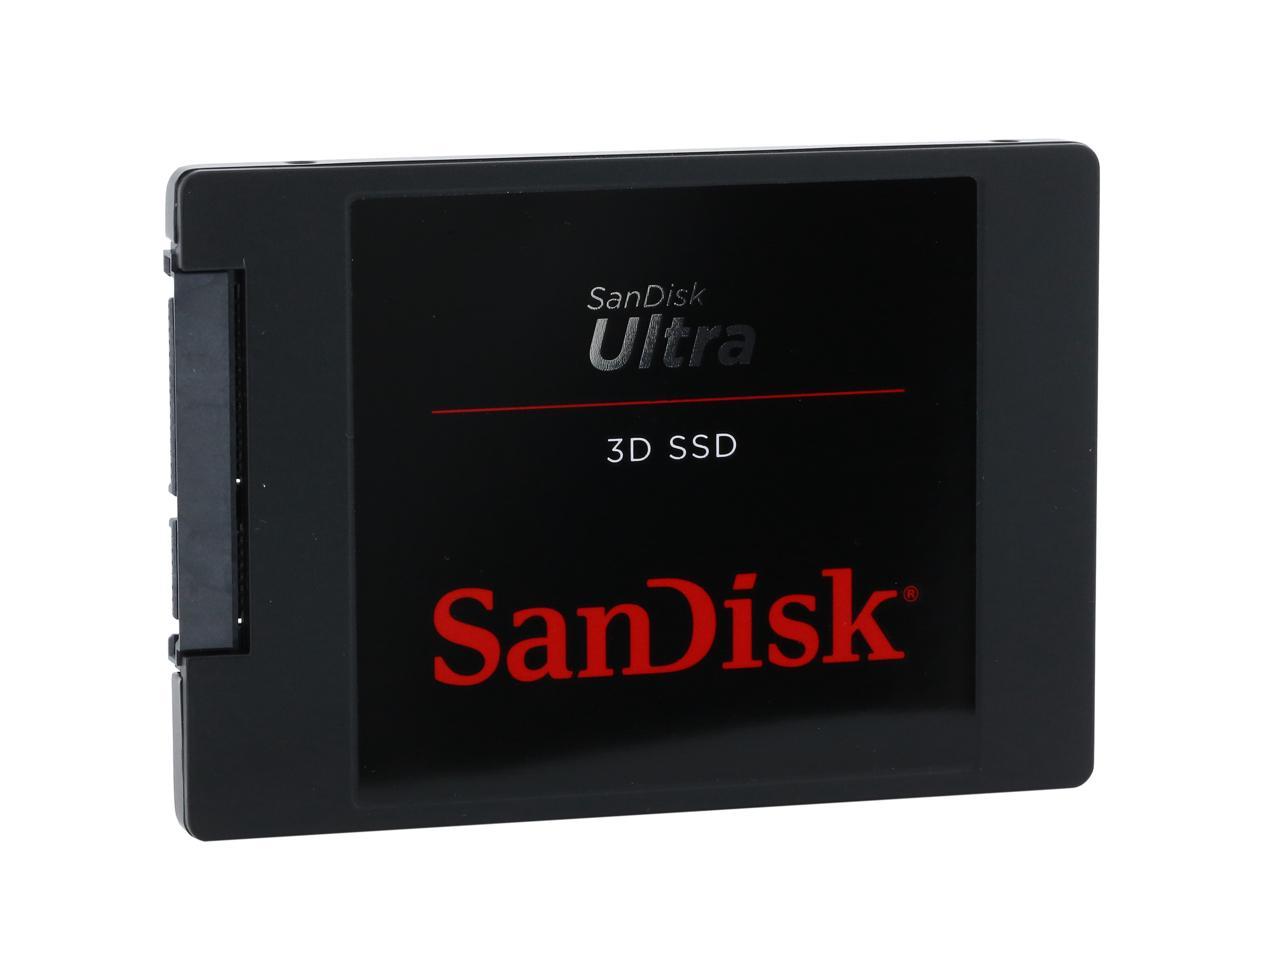 Sandisk Ultra 3d 2 5 500gb Sata Iii Internal Ssd Newegg Ca